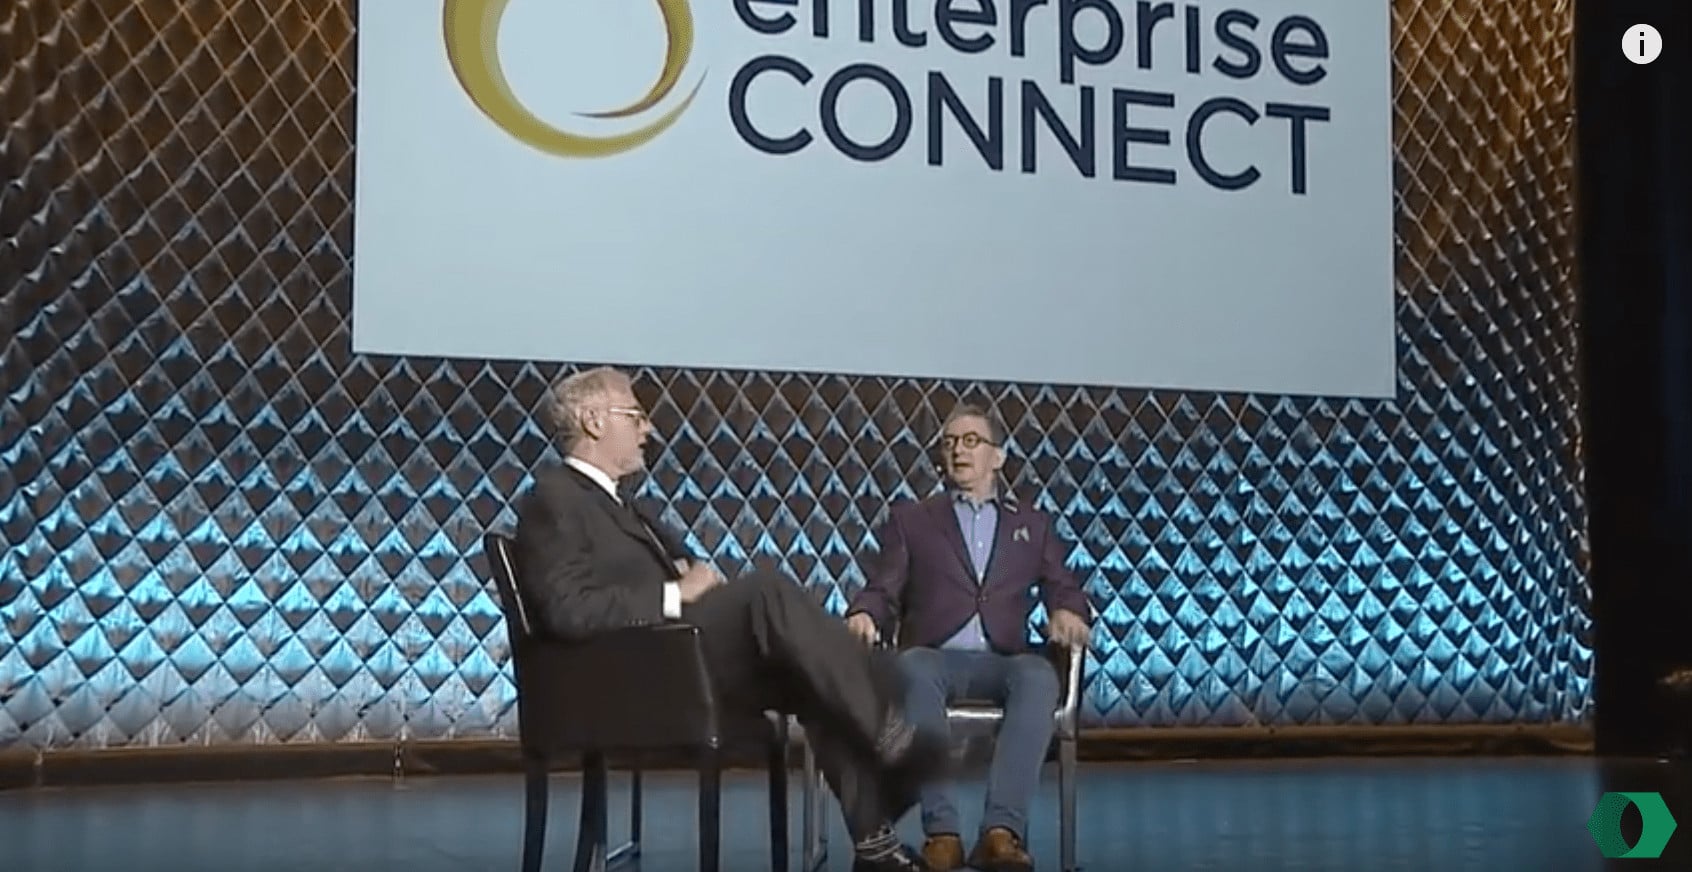 Enterprise Connect event